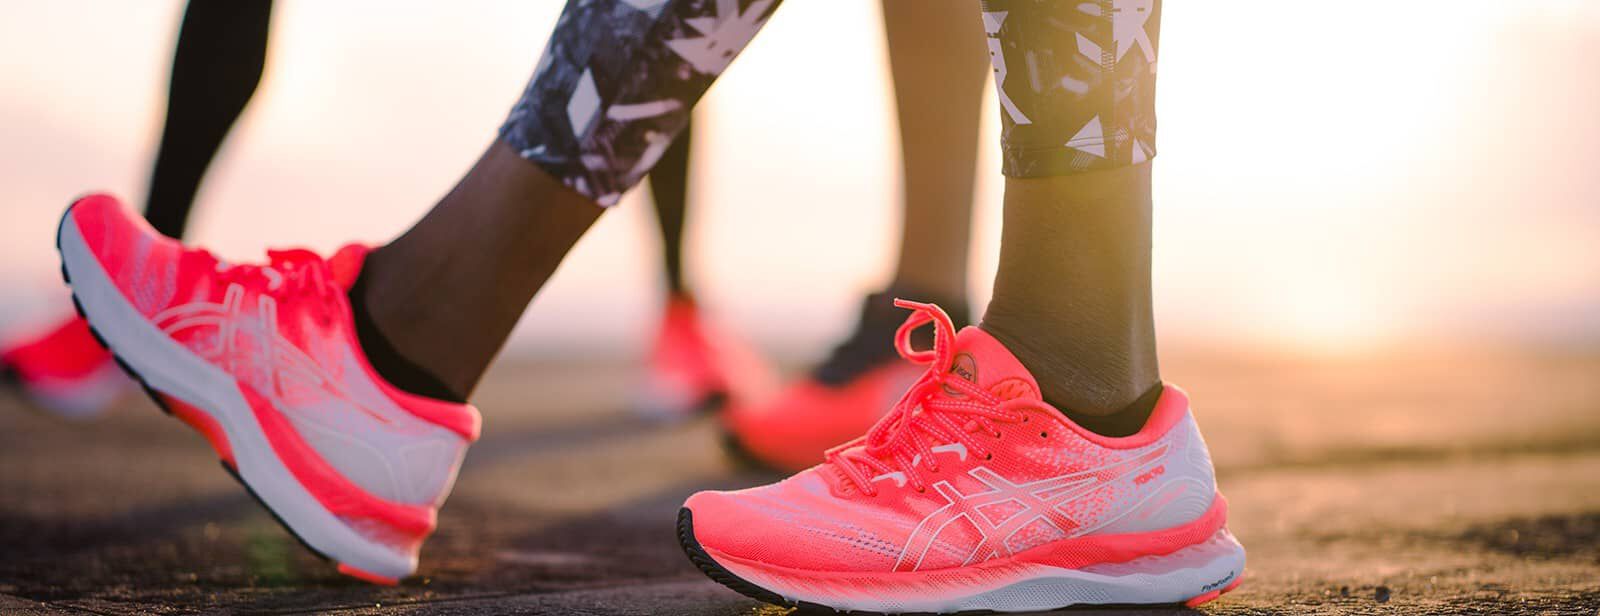 Cómo elegir tus primeras zapatillas de running | ASICS